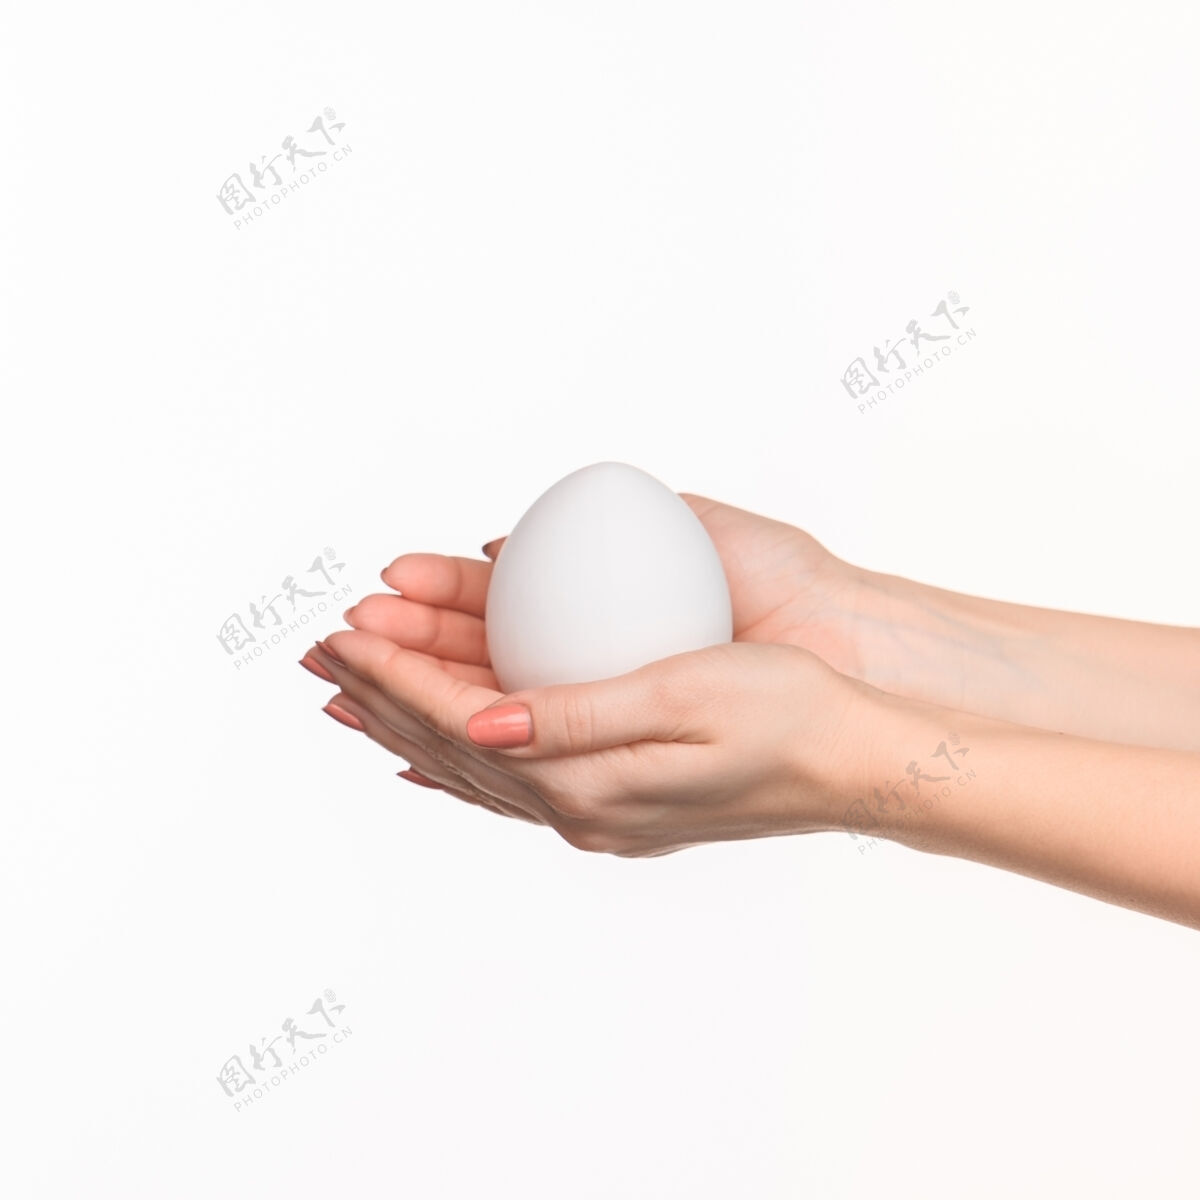 人类女人的手上拿着一个白鸡蛋椭圆形道具手